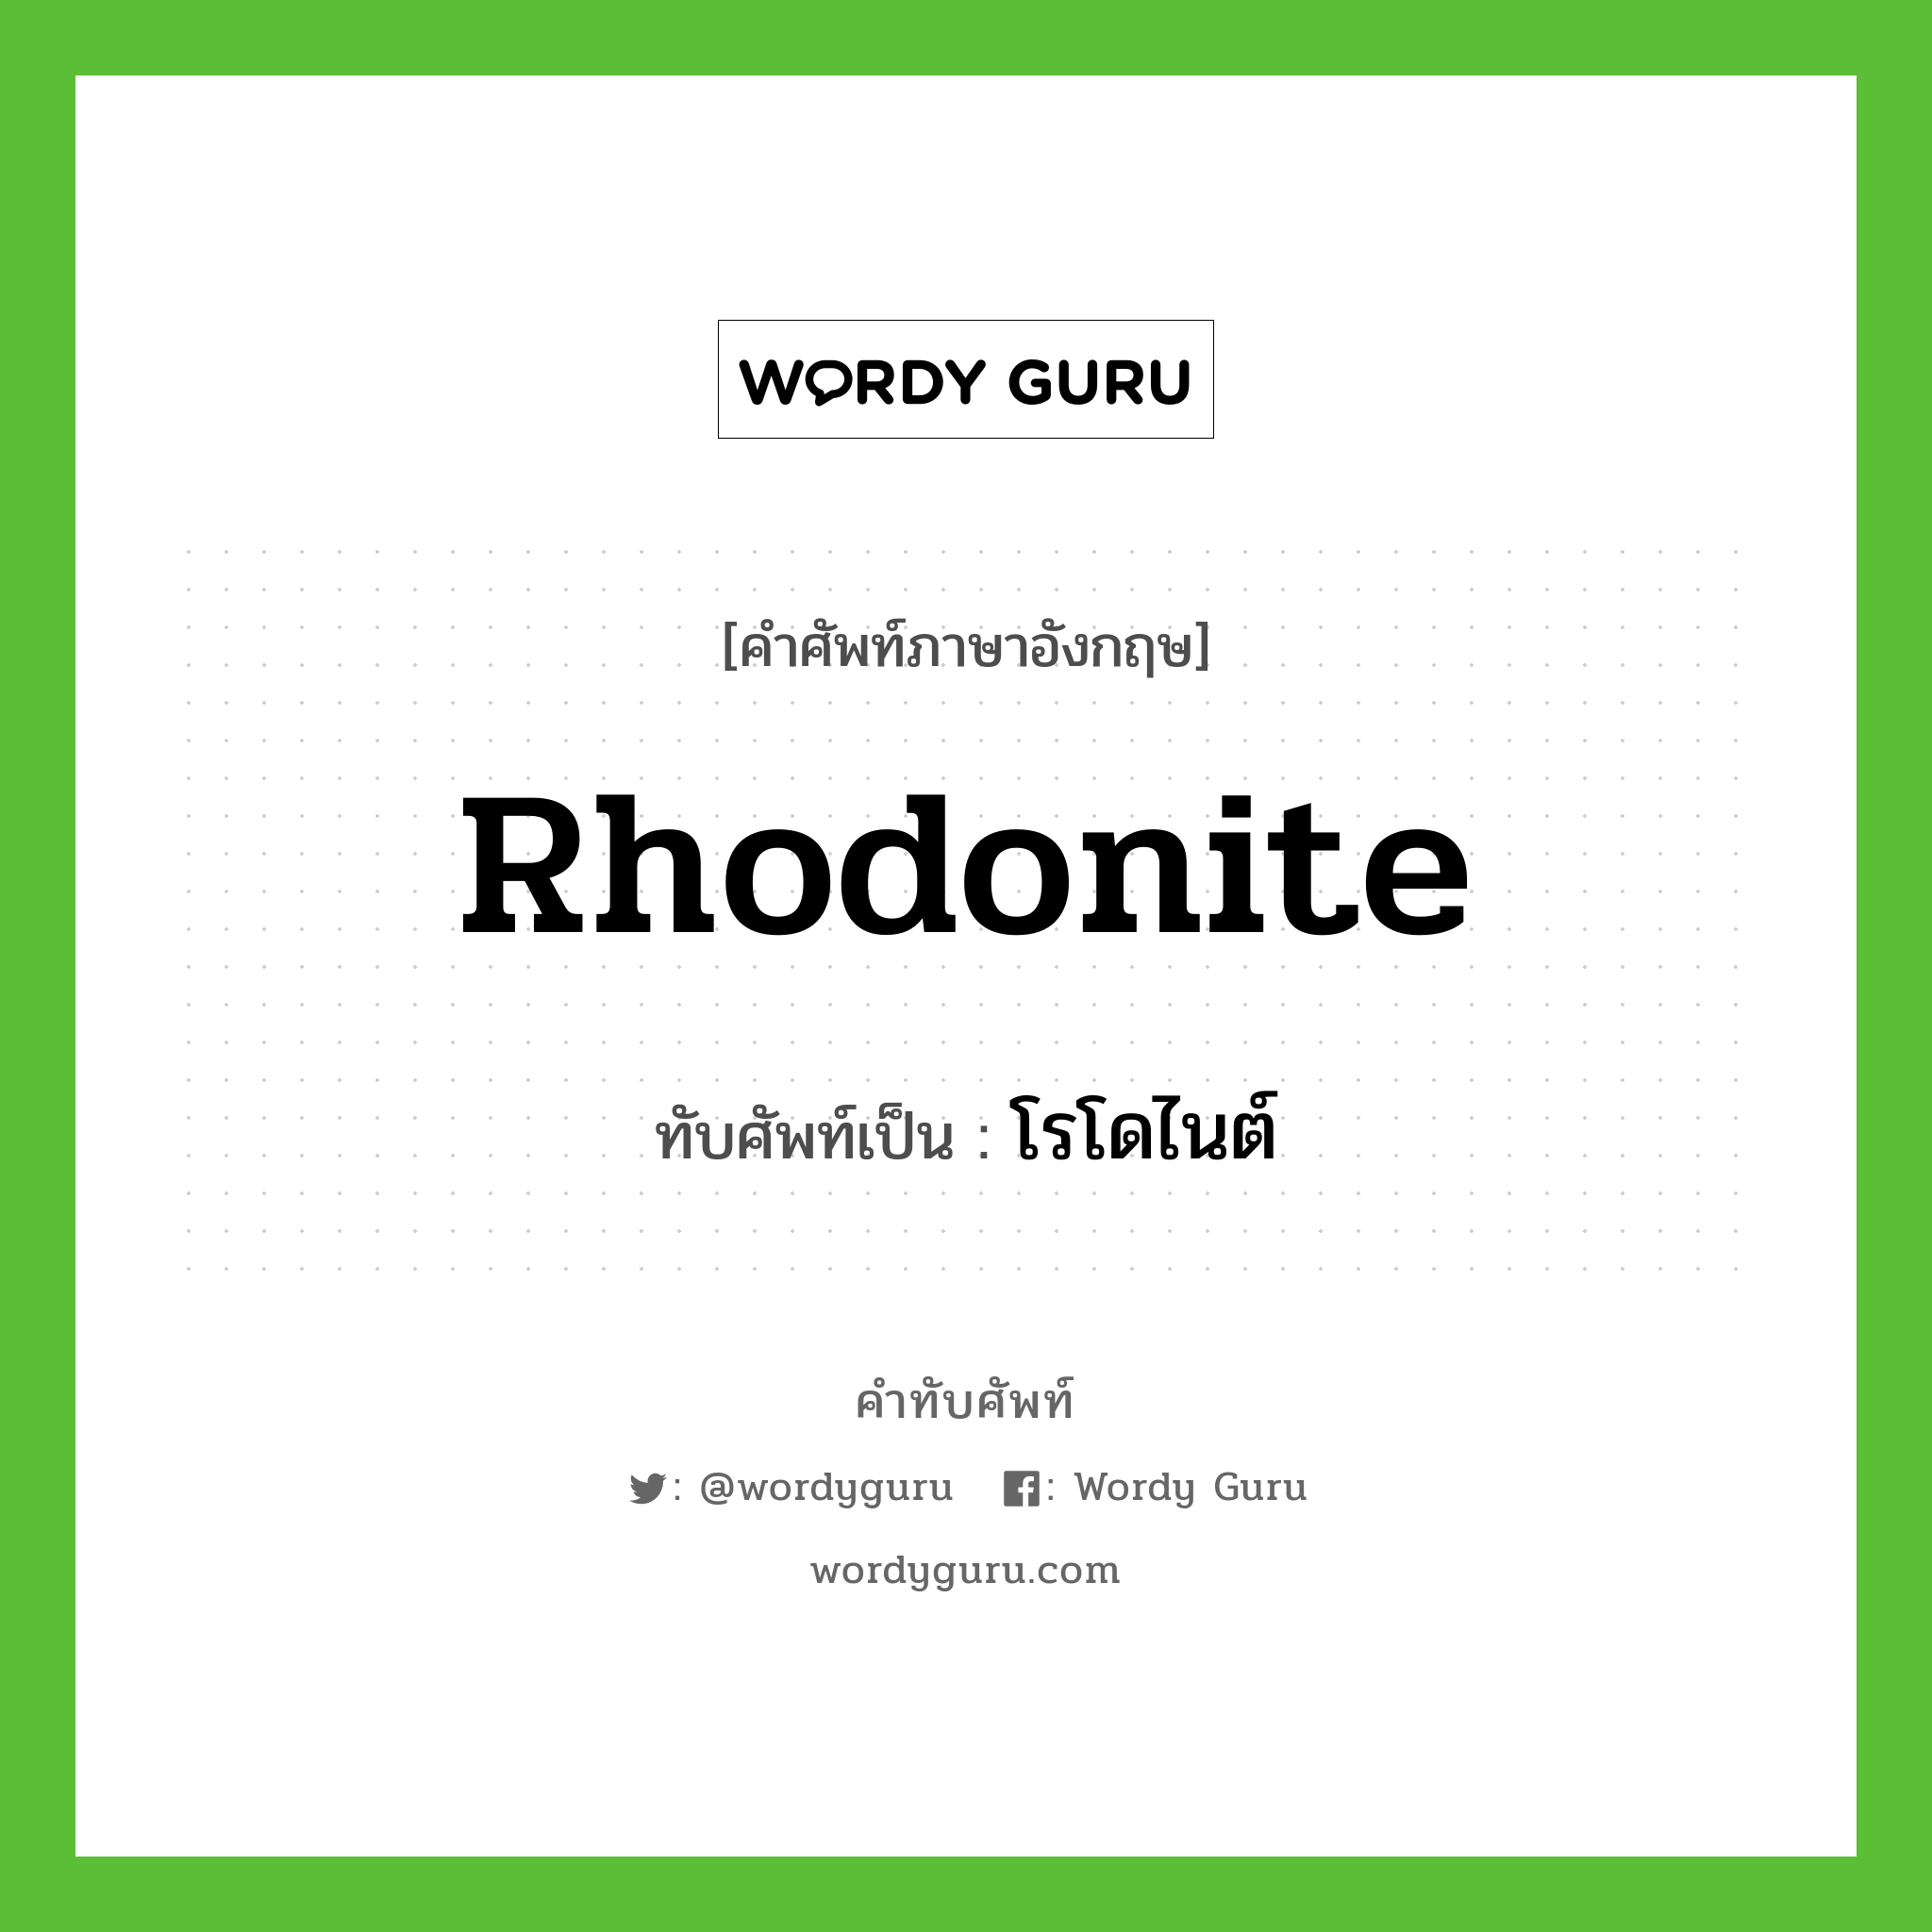 โรโดไนต์ เขียนอย่างไร?, คำศัพท์ภาษาอังกฤษ โรโดไนต์ ทับศัพท์เป็น rhodonite